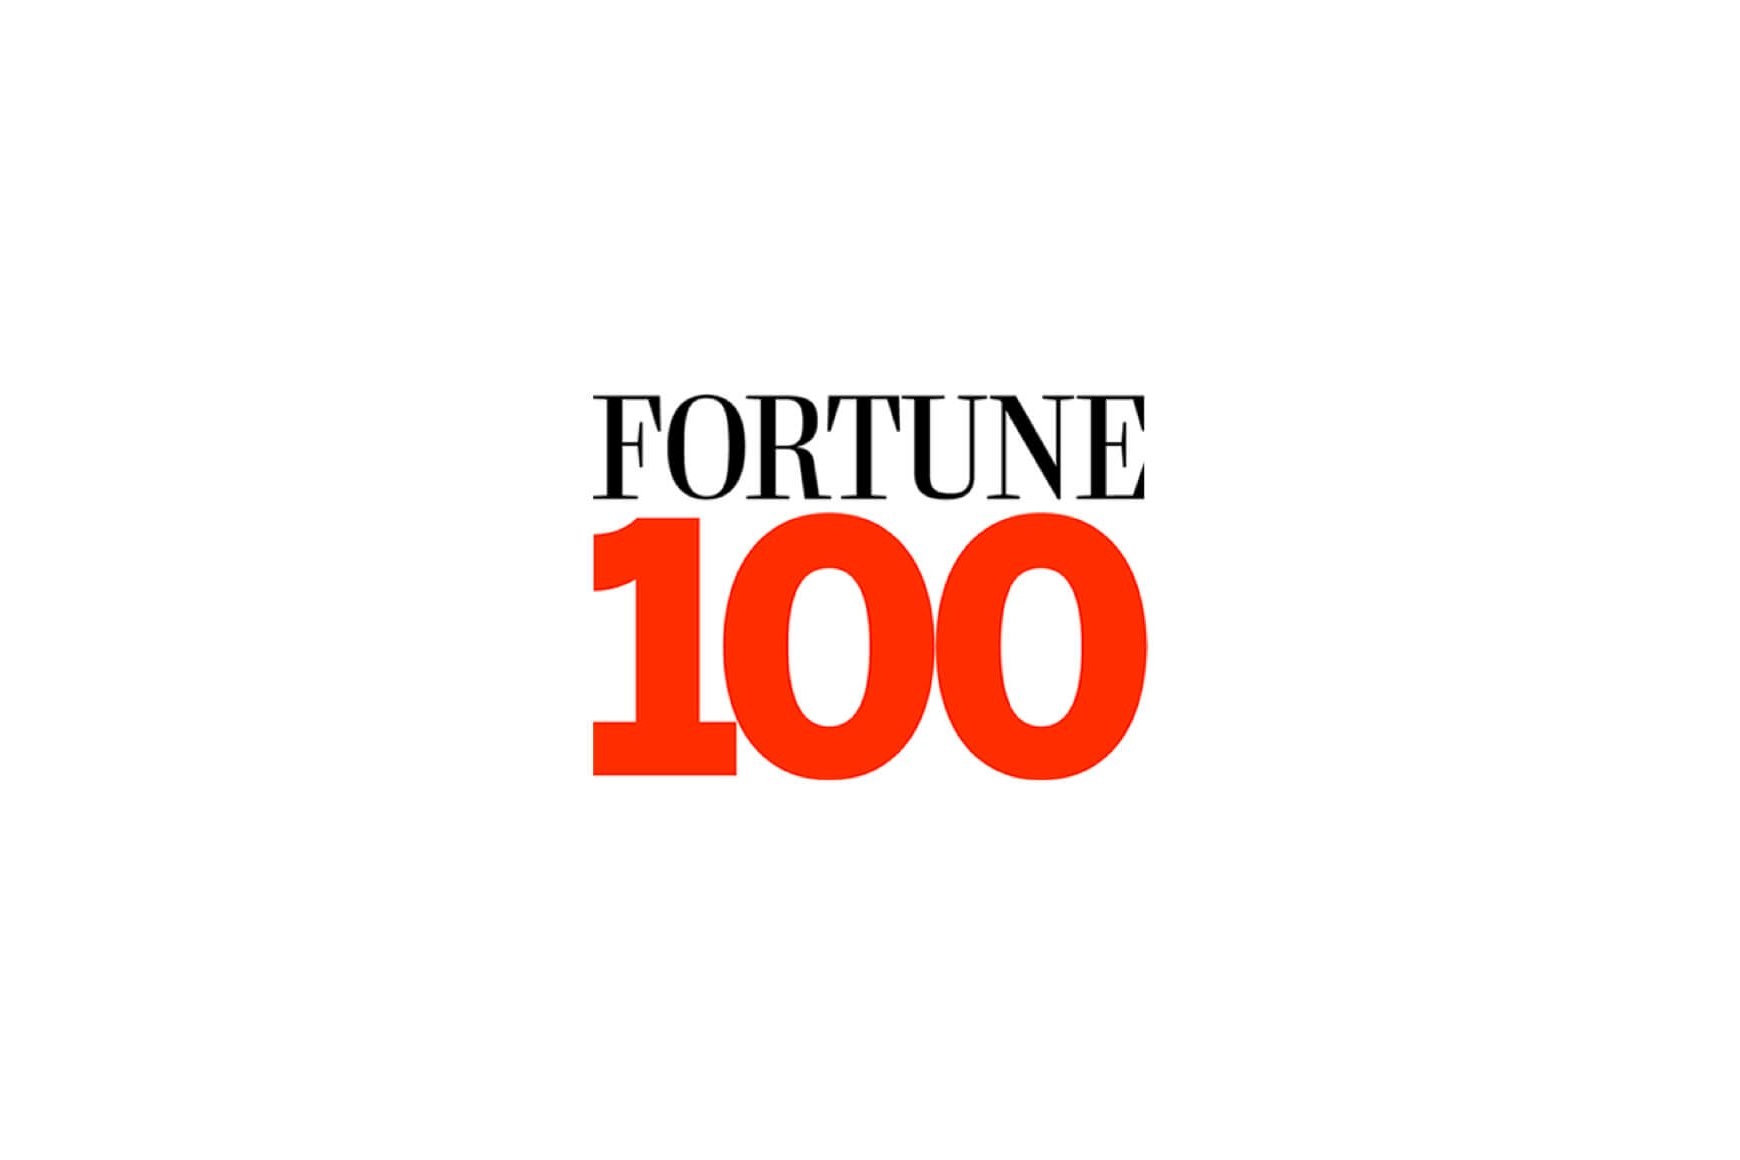 Das im Gesundheitswesen tätige Unternehmen Fortune 100 transferiert Tausende von Arbeitsplätzen in die Talkdesk-Cloud, um den Geschäftsbetrieb aufrechtzuerhalten, und verlagert die Arbeit von Agenten innerhalb weniger Stunden ins Homeoffice